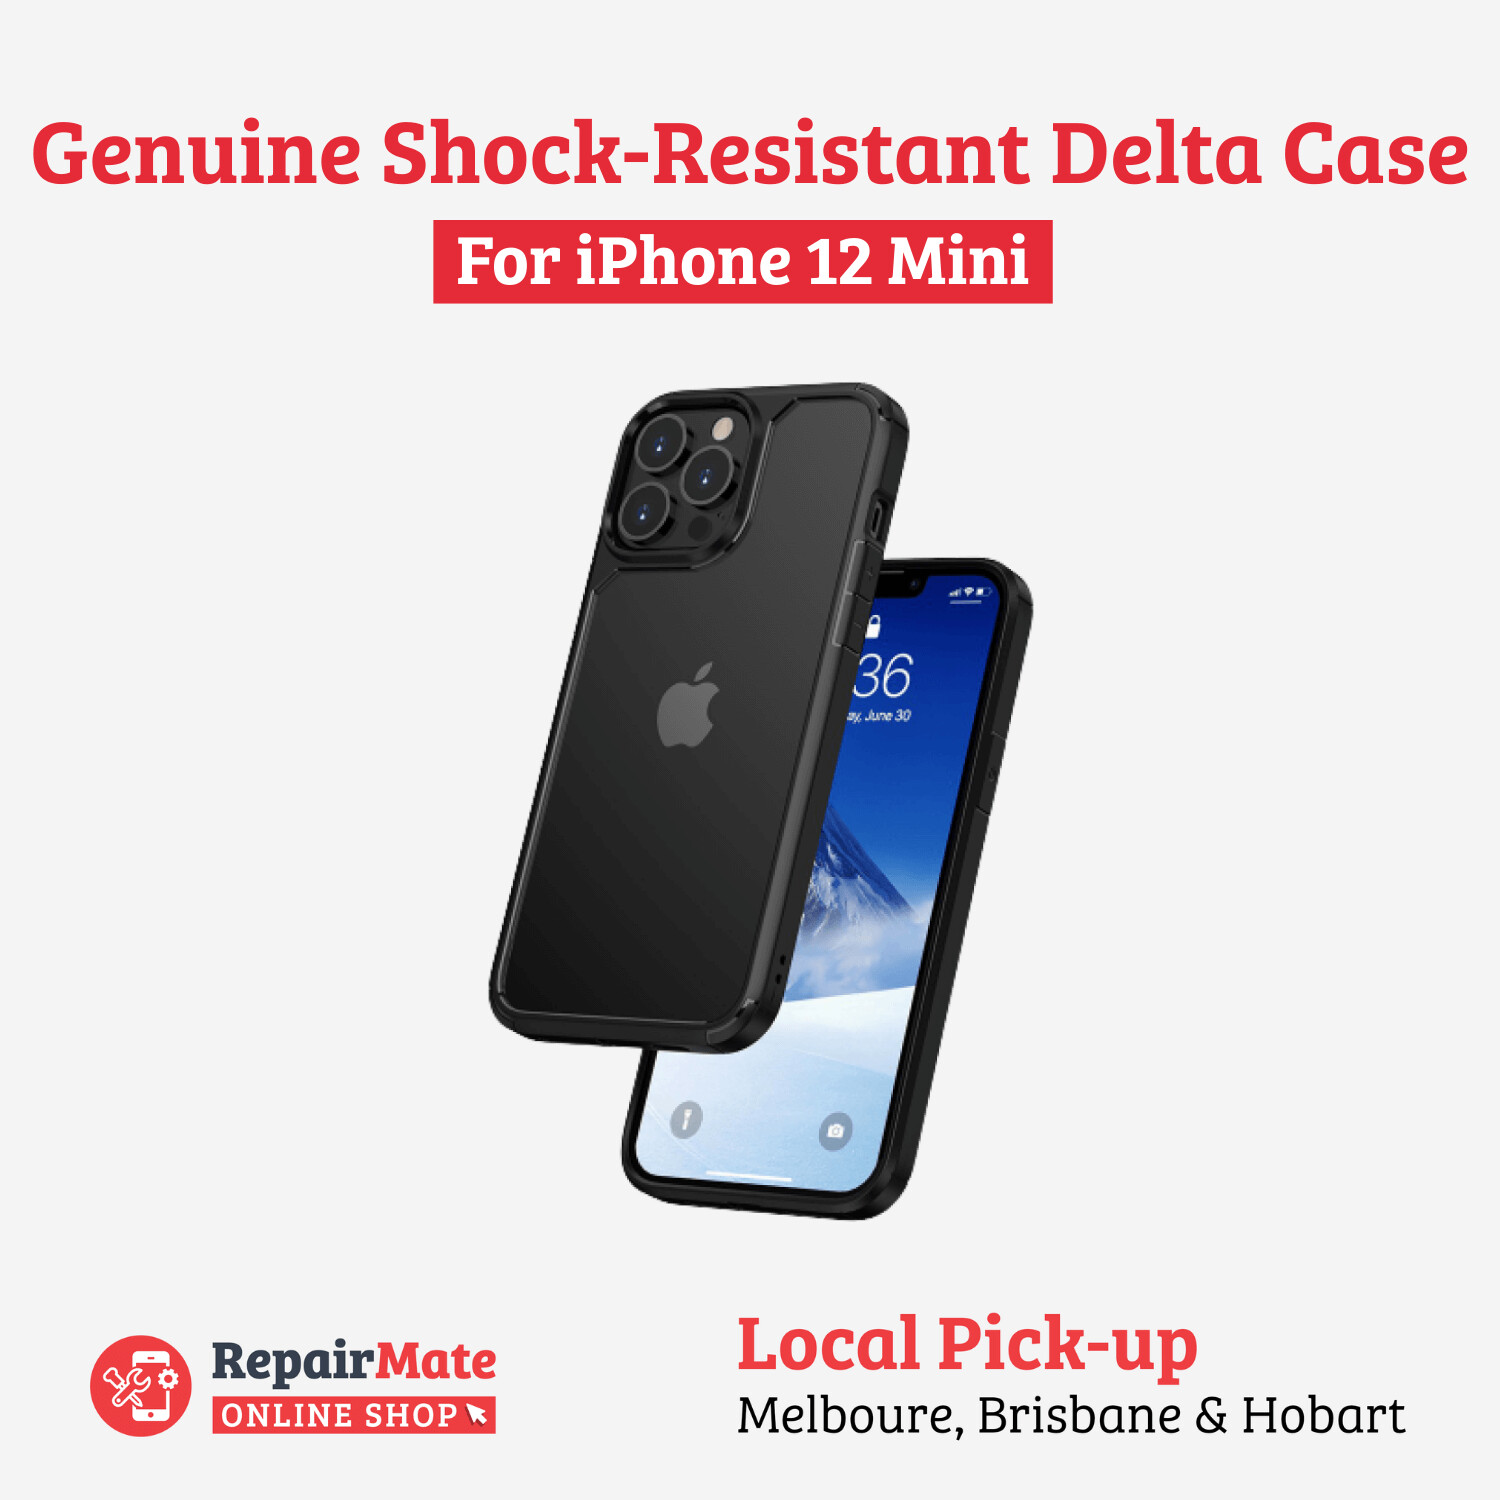 iPhone 12 Mini Genuine Shock-Resistant Delta Case